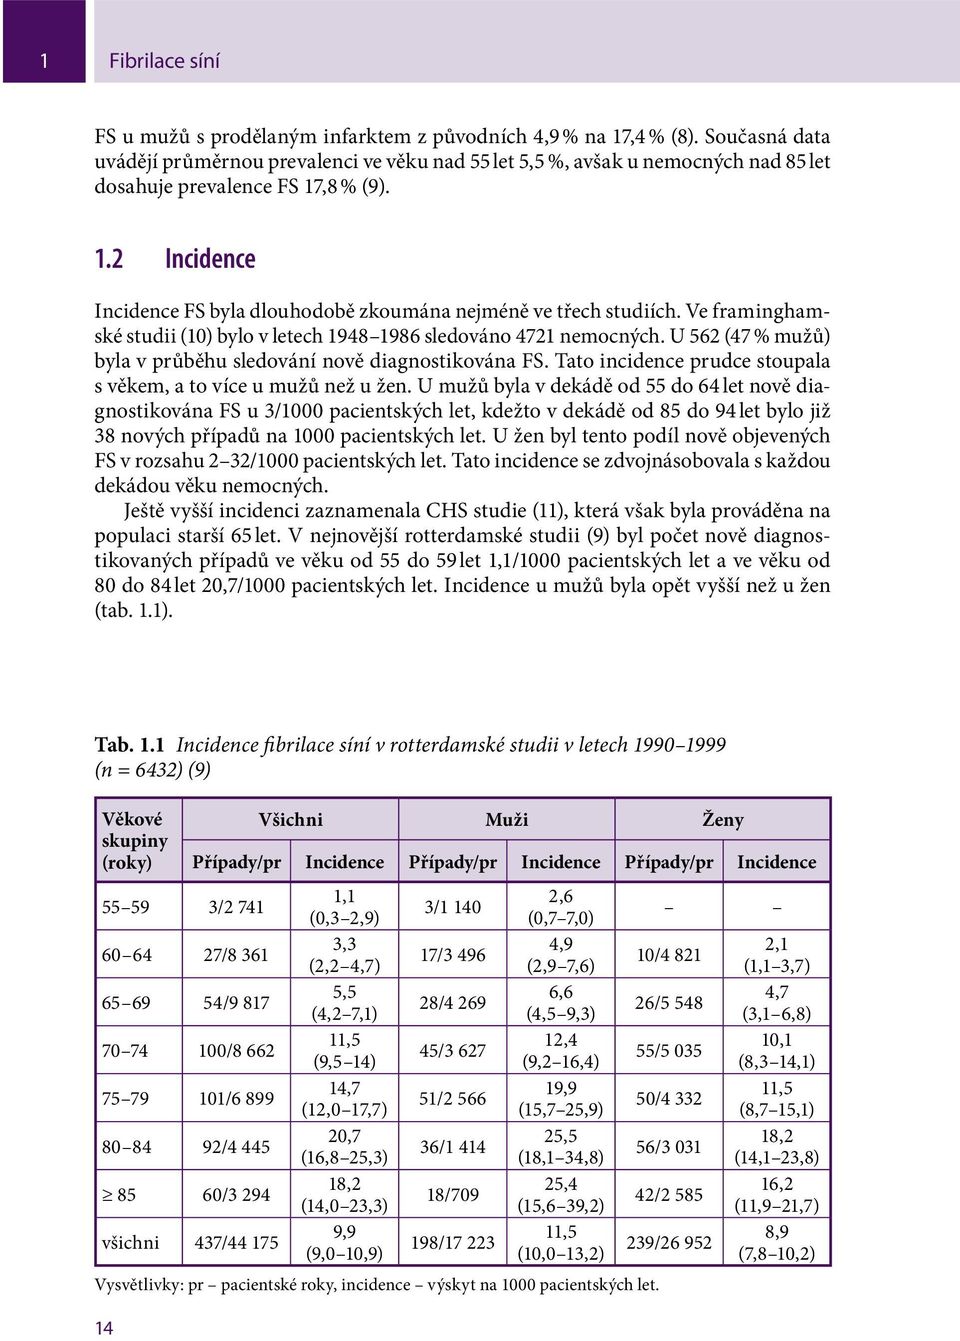 Ve framinghamské studii (10) bylo v letech 1948 1986 sledováno 4721 nemocných. U 562 (47 % mužů) byla v průběhu sledování nově diagnostikována FS.